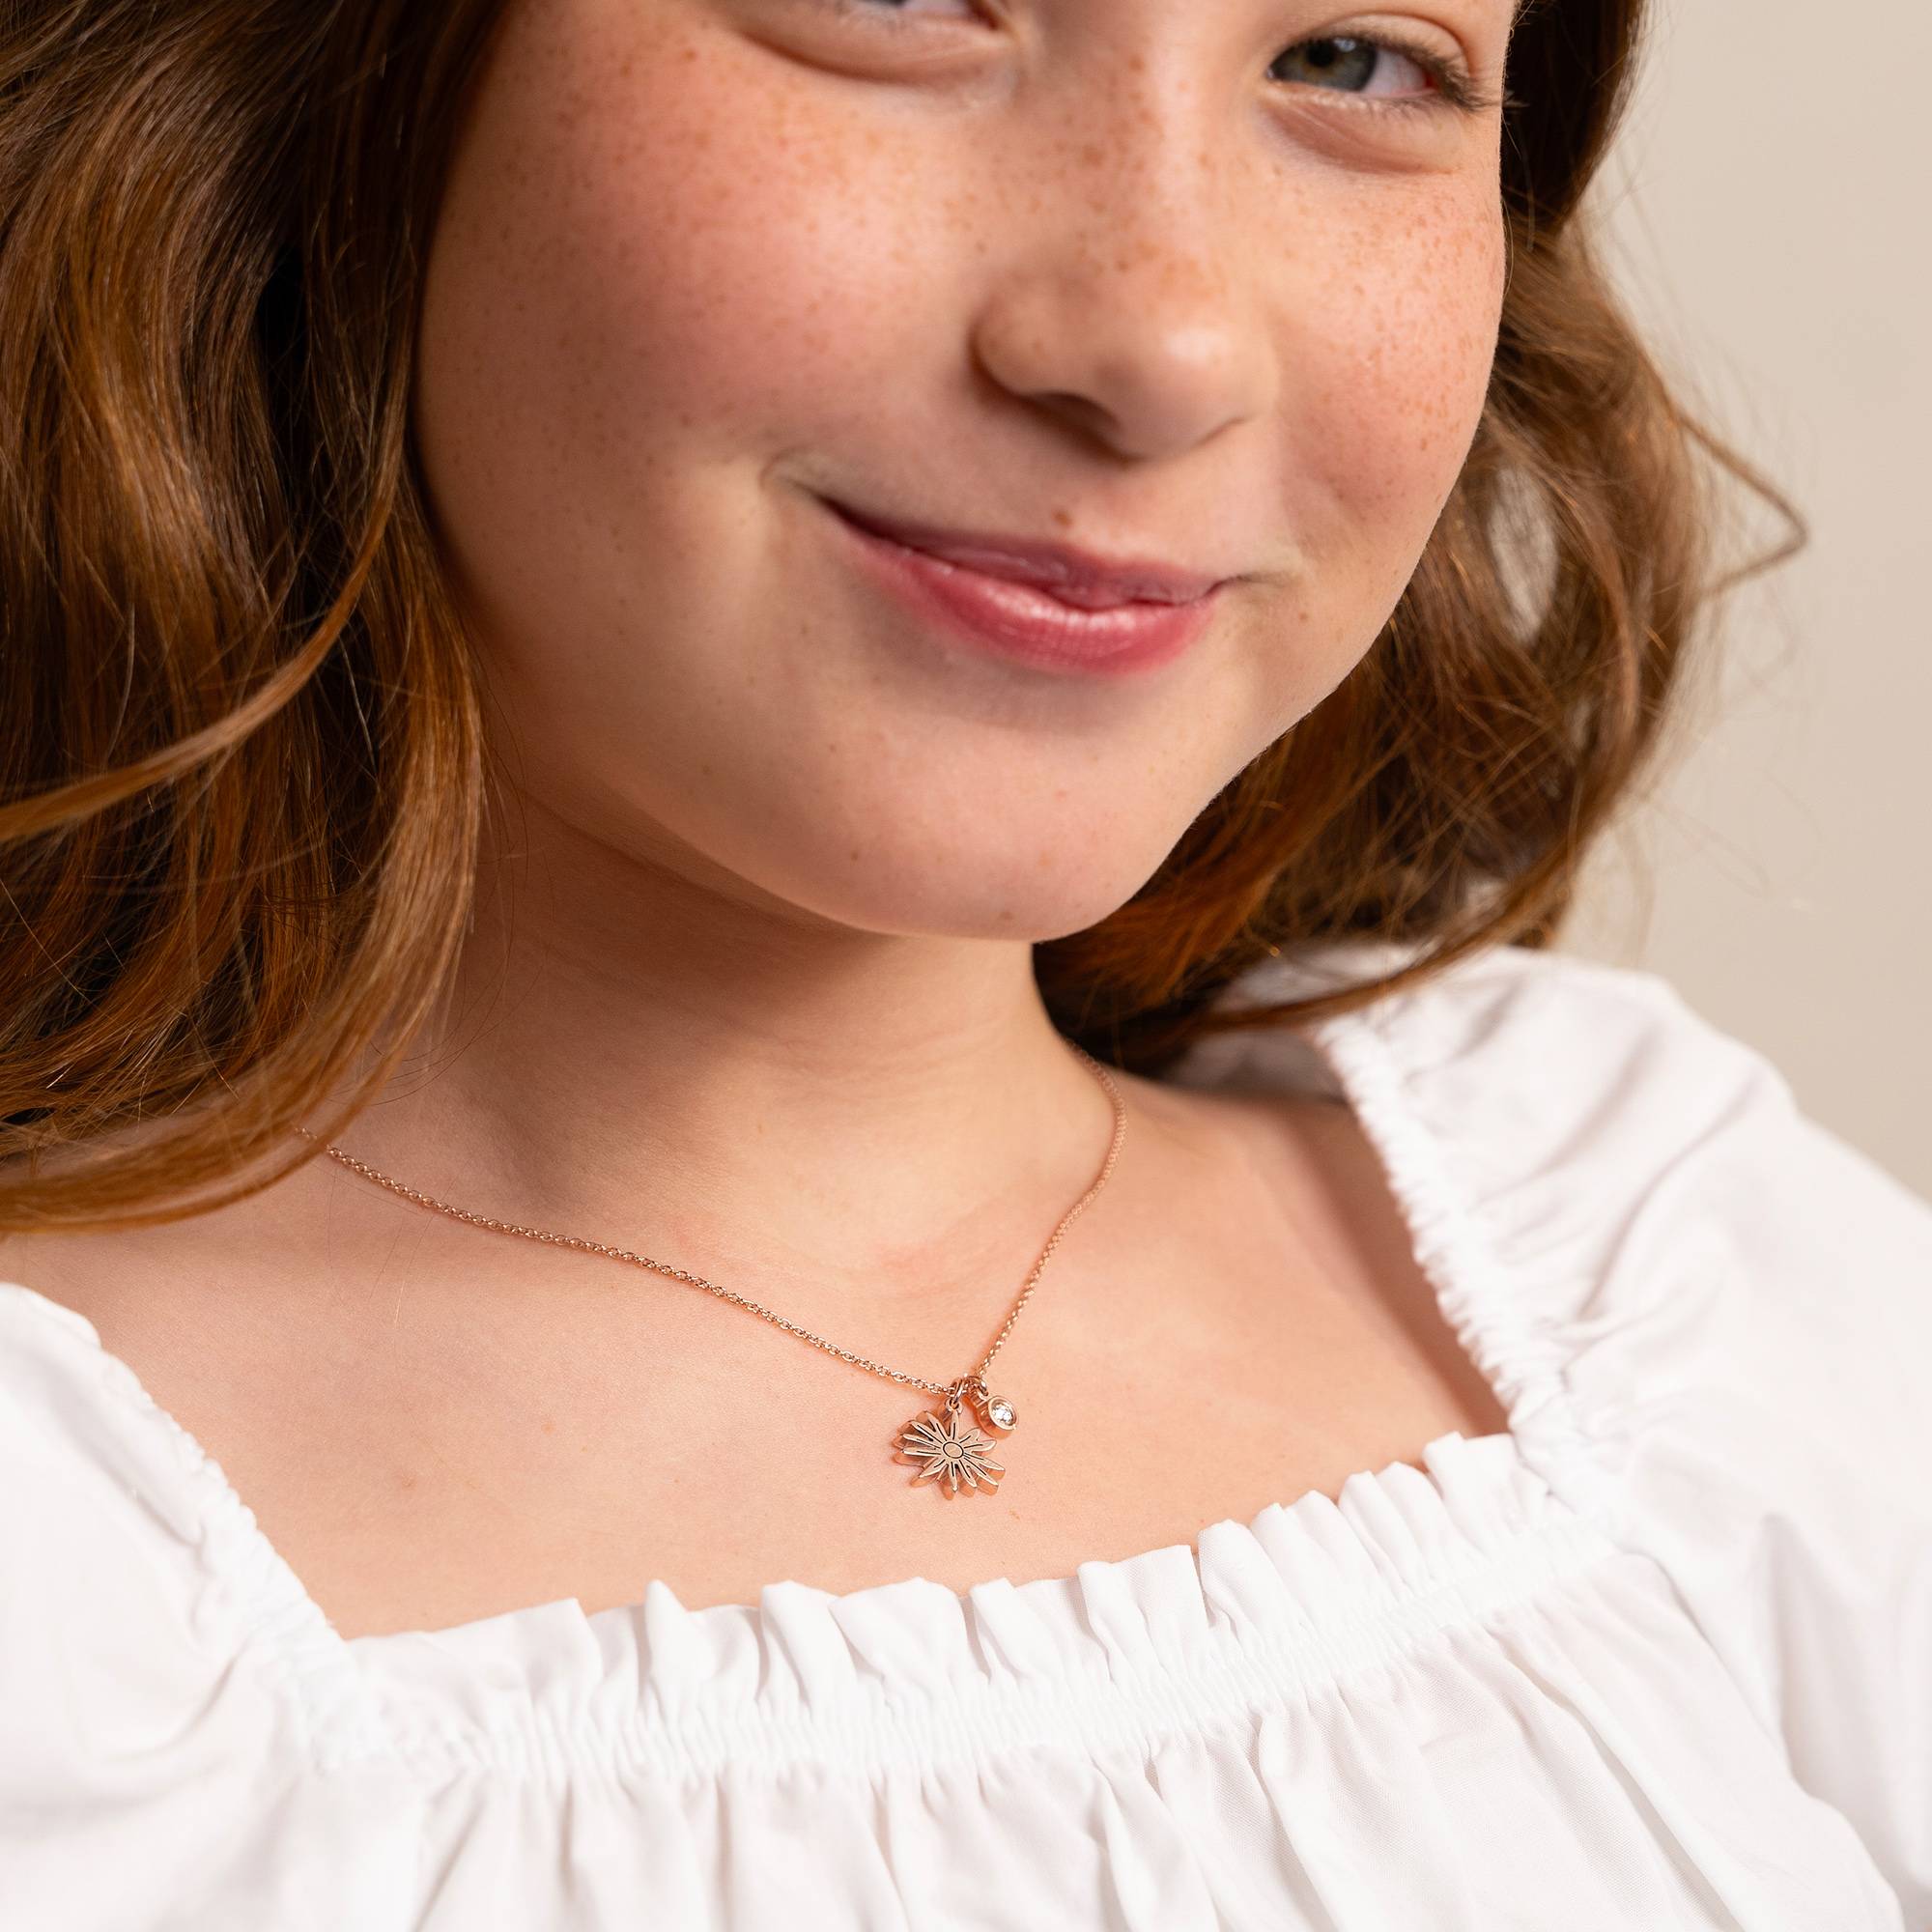 Blühende Geburtsblume Initial-Halskette mit Geburtsstein für Mädchen - 750er rosé vergoldetes Silber-6 Produktfoto